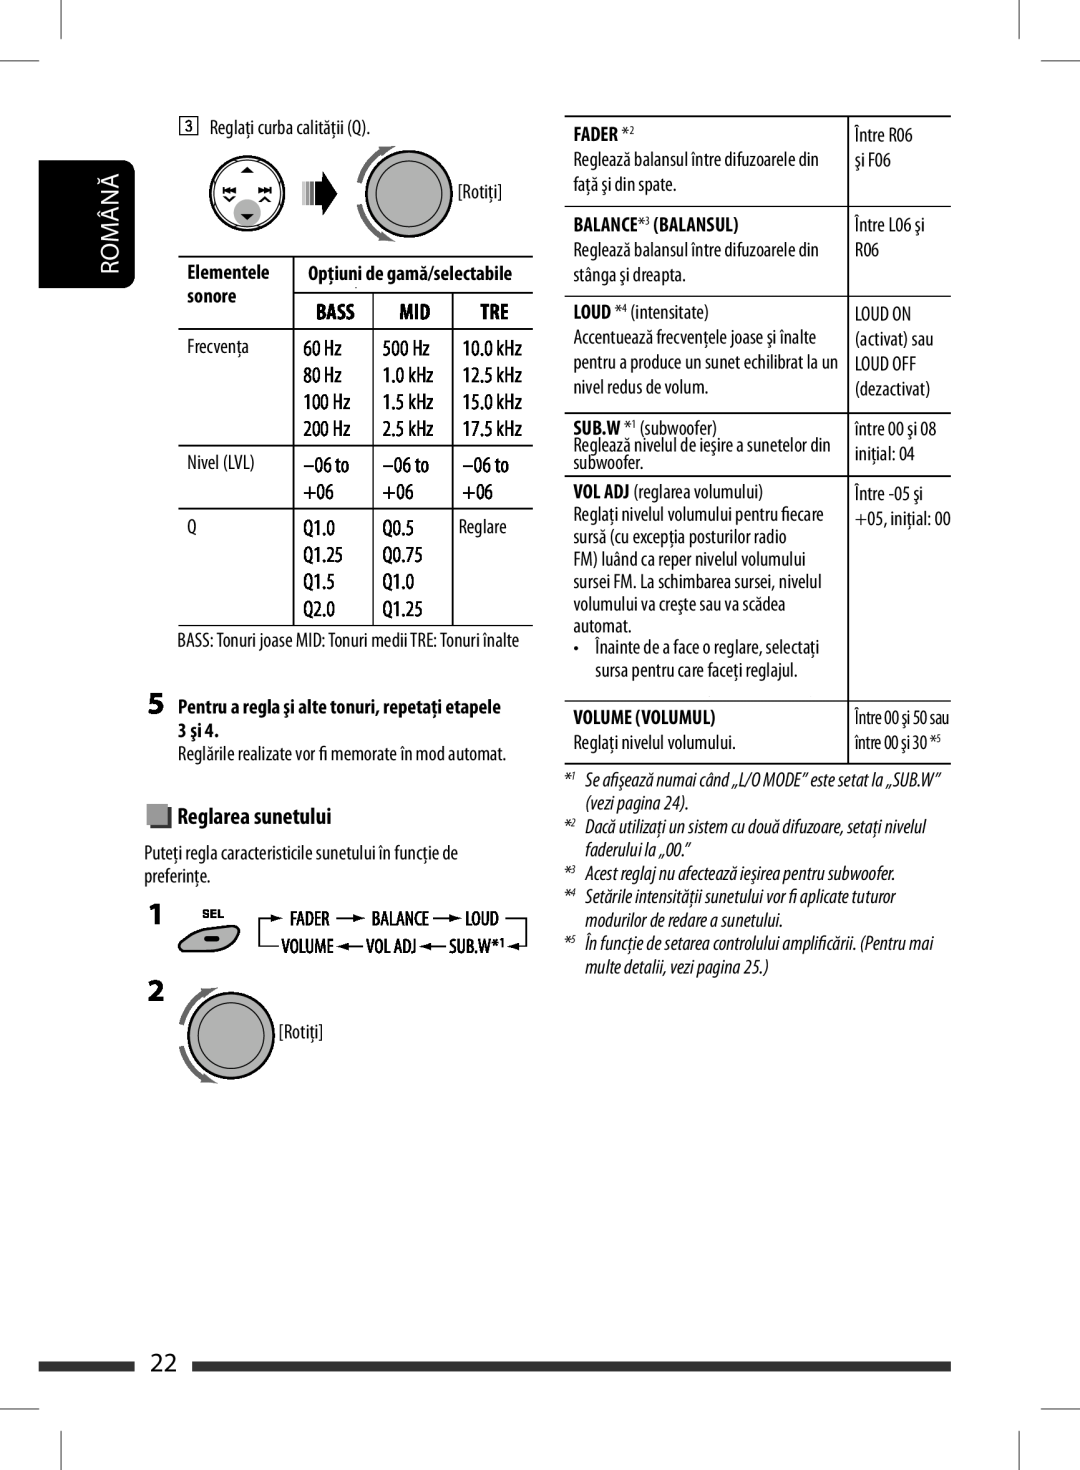 JVC KD-BT11 manual Sound, Reglarea sunetului, see page, level to “00.”, Română 